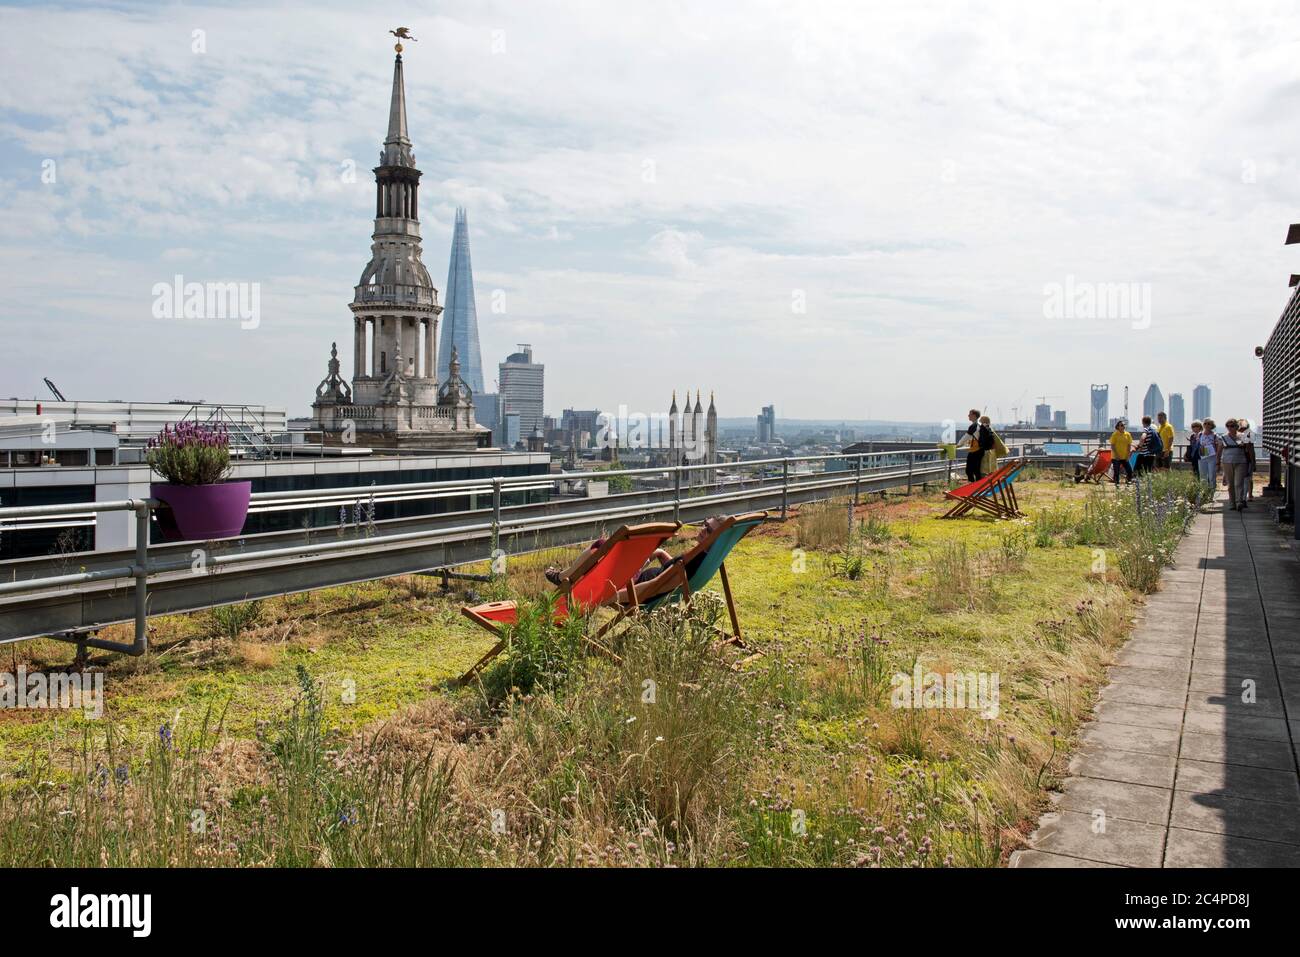 Tetto verde con persone e sedie a sdraio con skyline della città sullo sfondo, City of London, Inghilterra Gran Bretagna Foto Stock